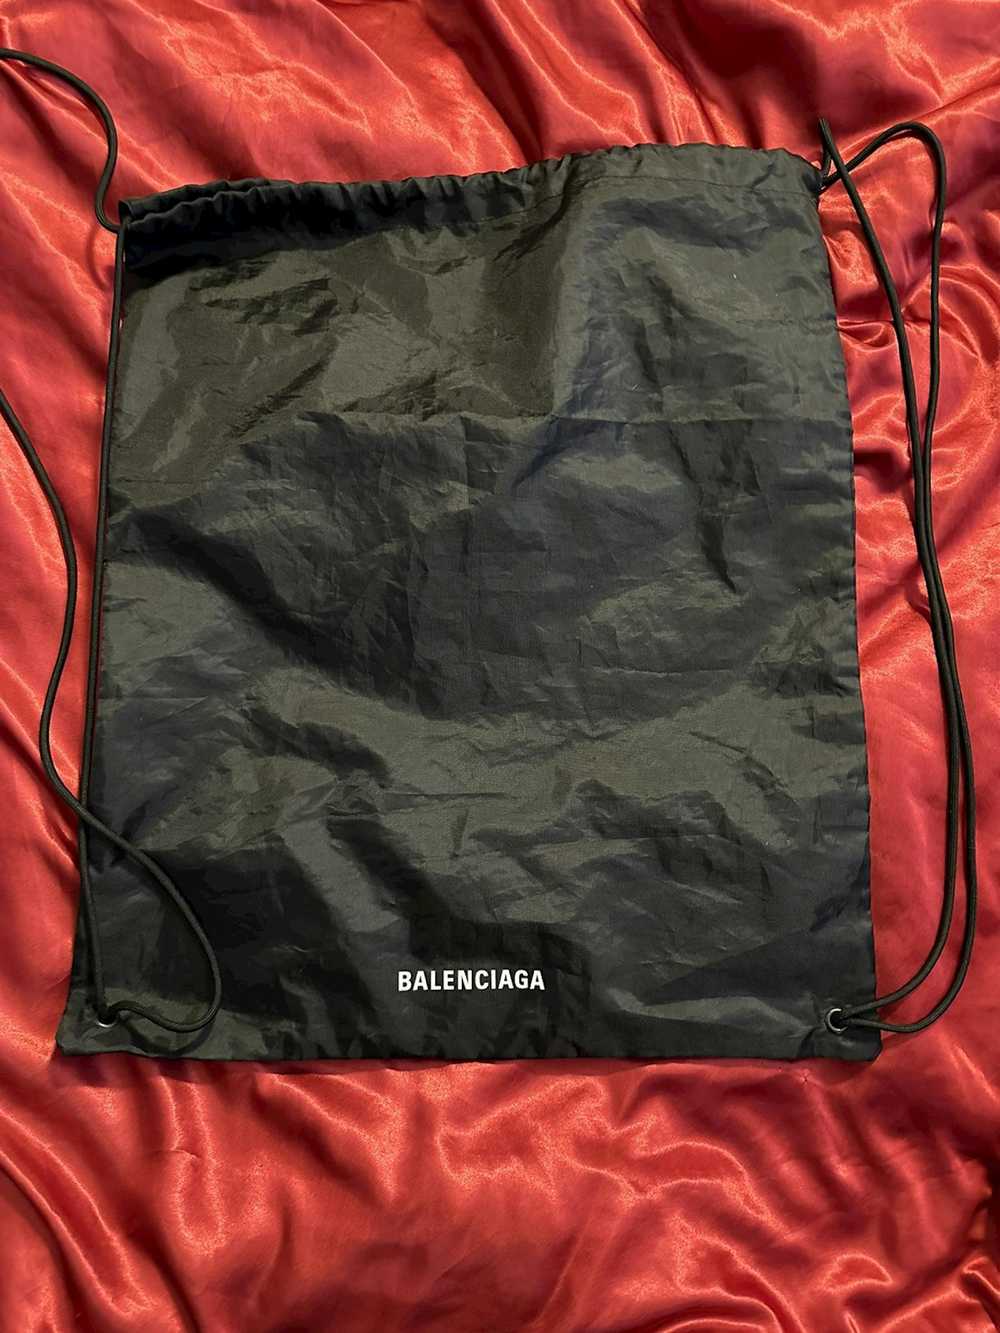 Balenciaga balenciaga drawstring bag - image 1